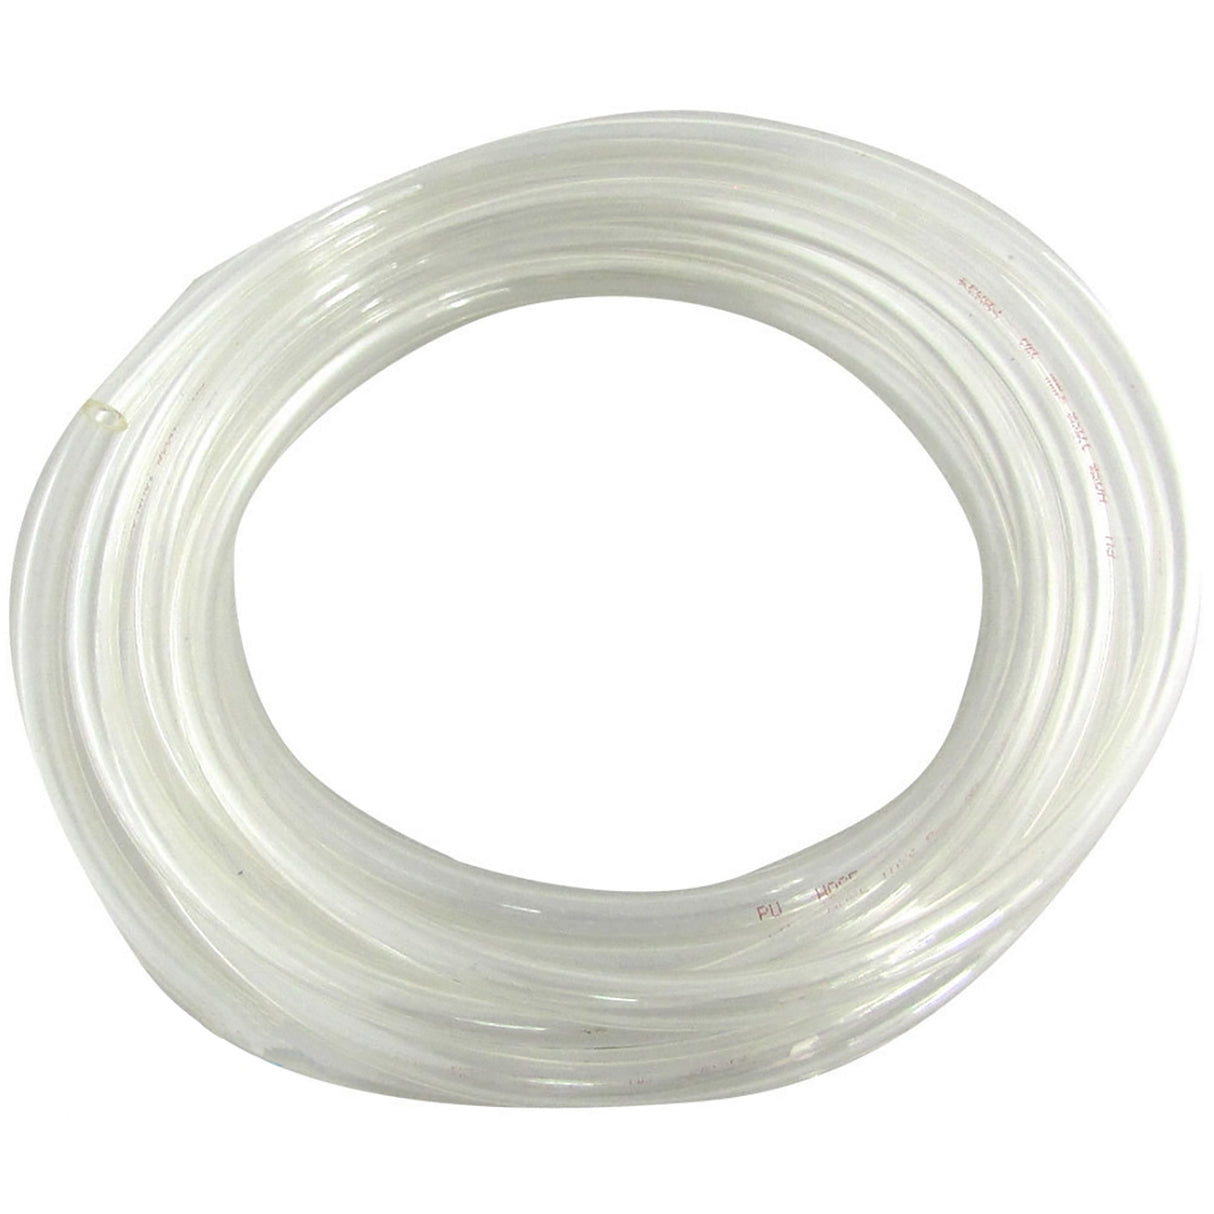 Compressed air hose Transparent 4x0.25 mm